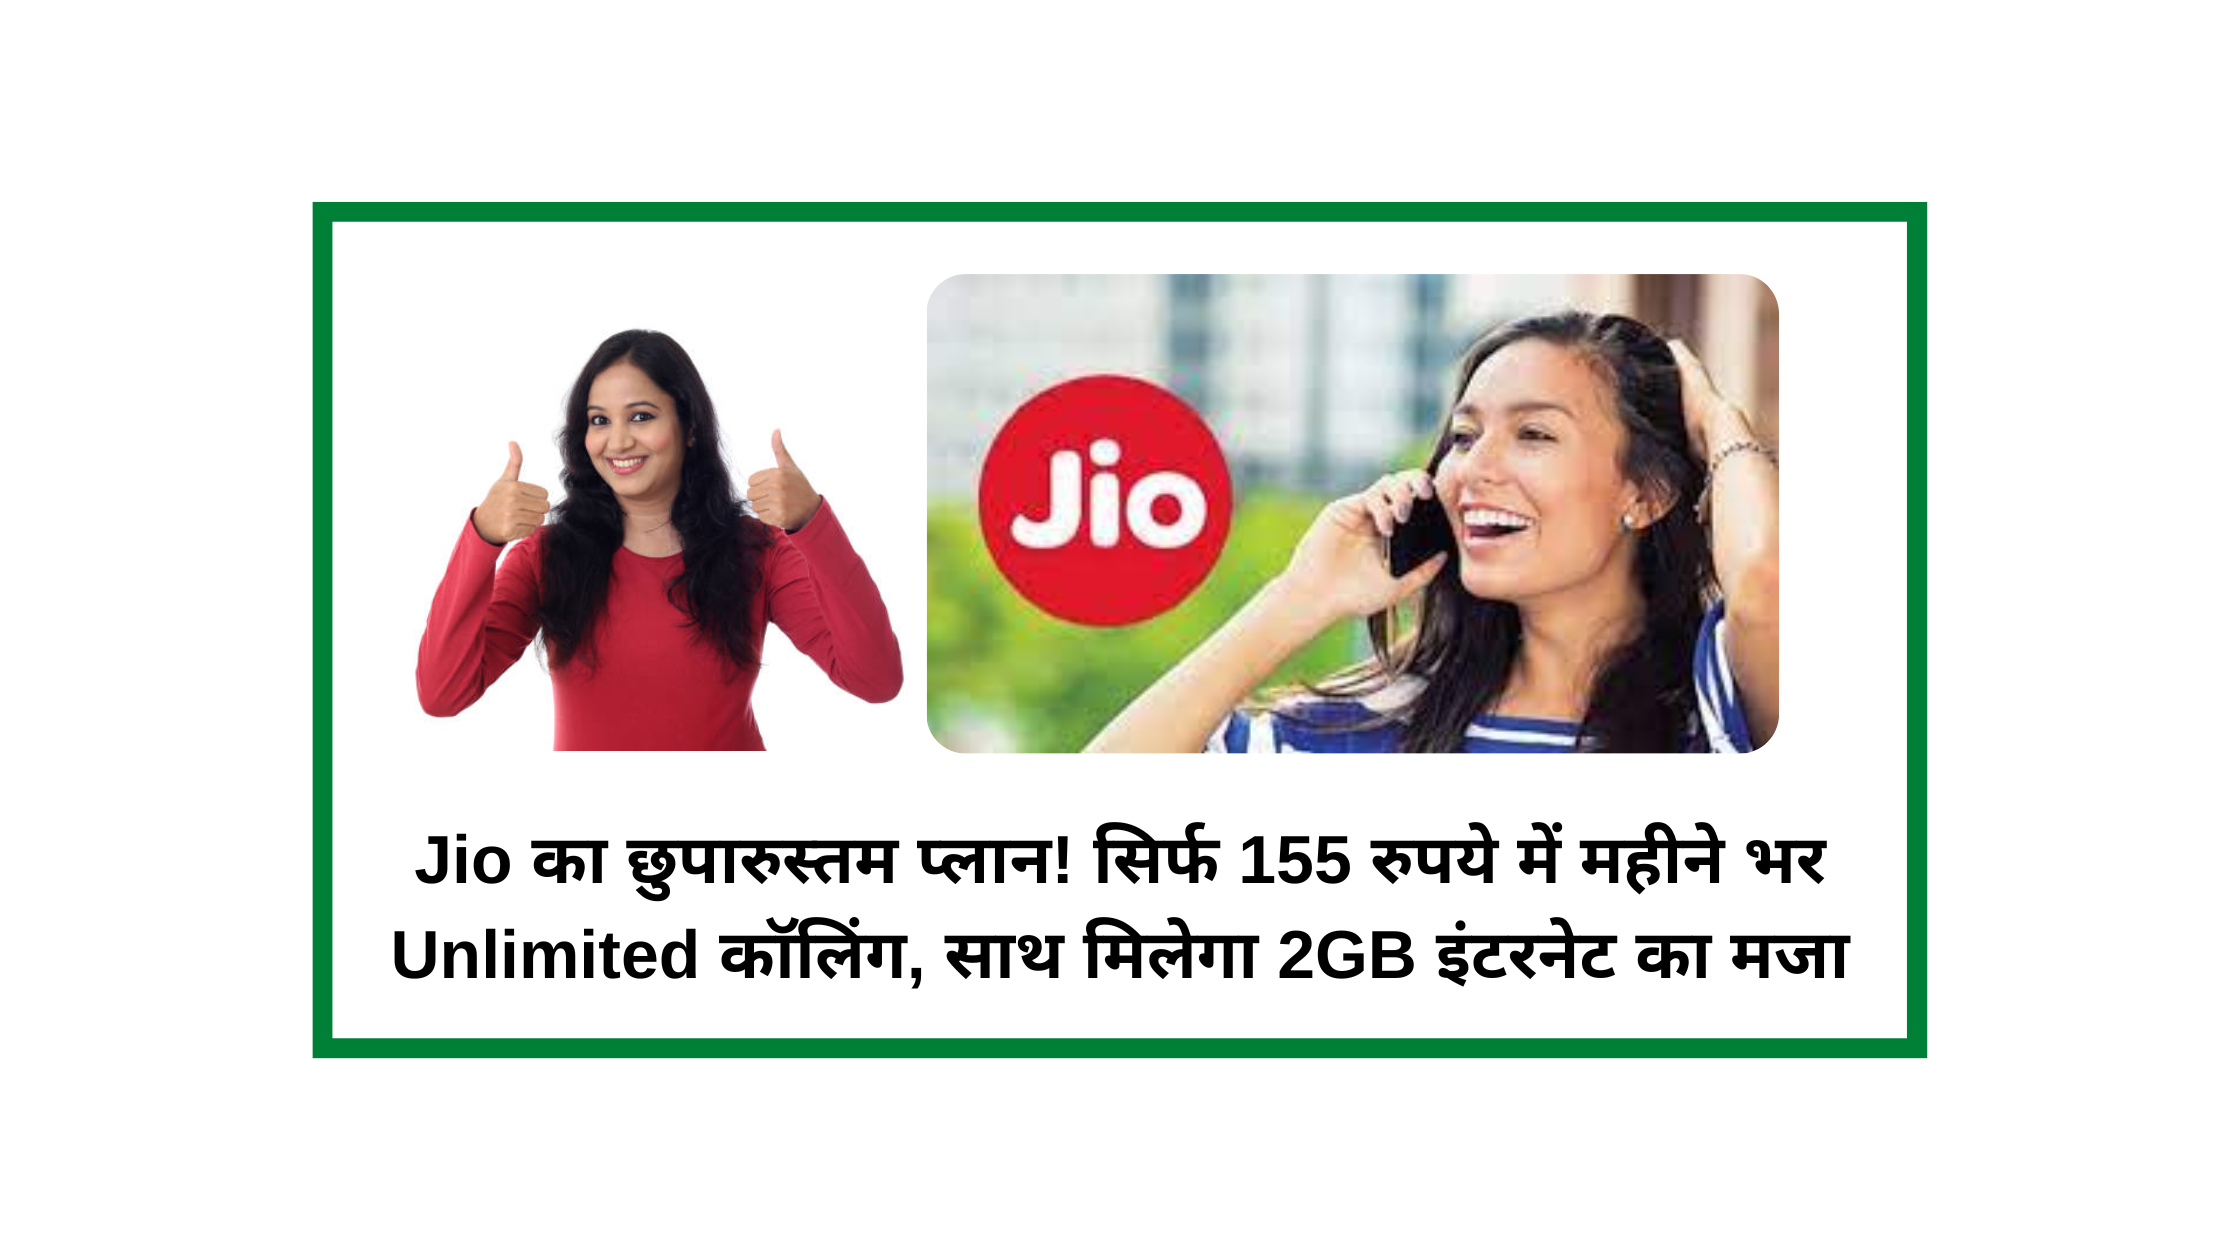 Jio का छुपारुस्तम प्लान! सिर्फ 155 रुपये में महीने भर Unlimited कॉलिंग, साथ मिलेगा 2GB इंटरनेट का मजा